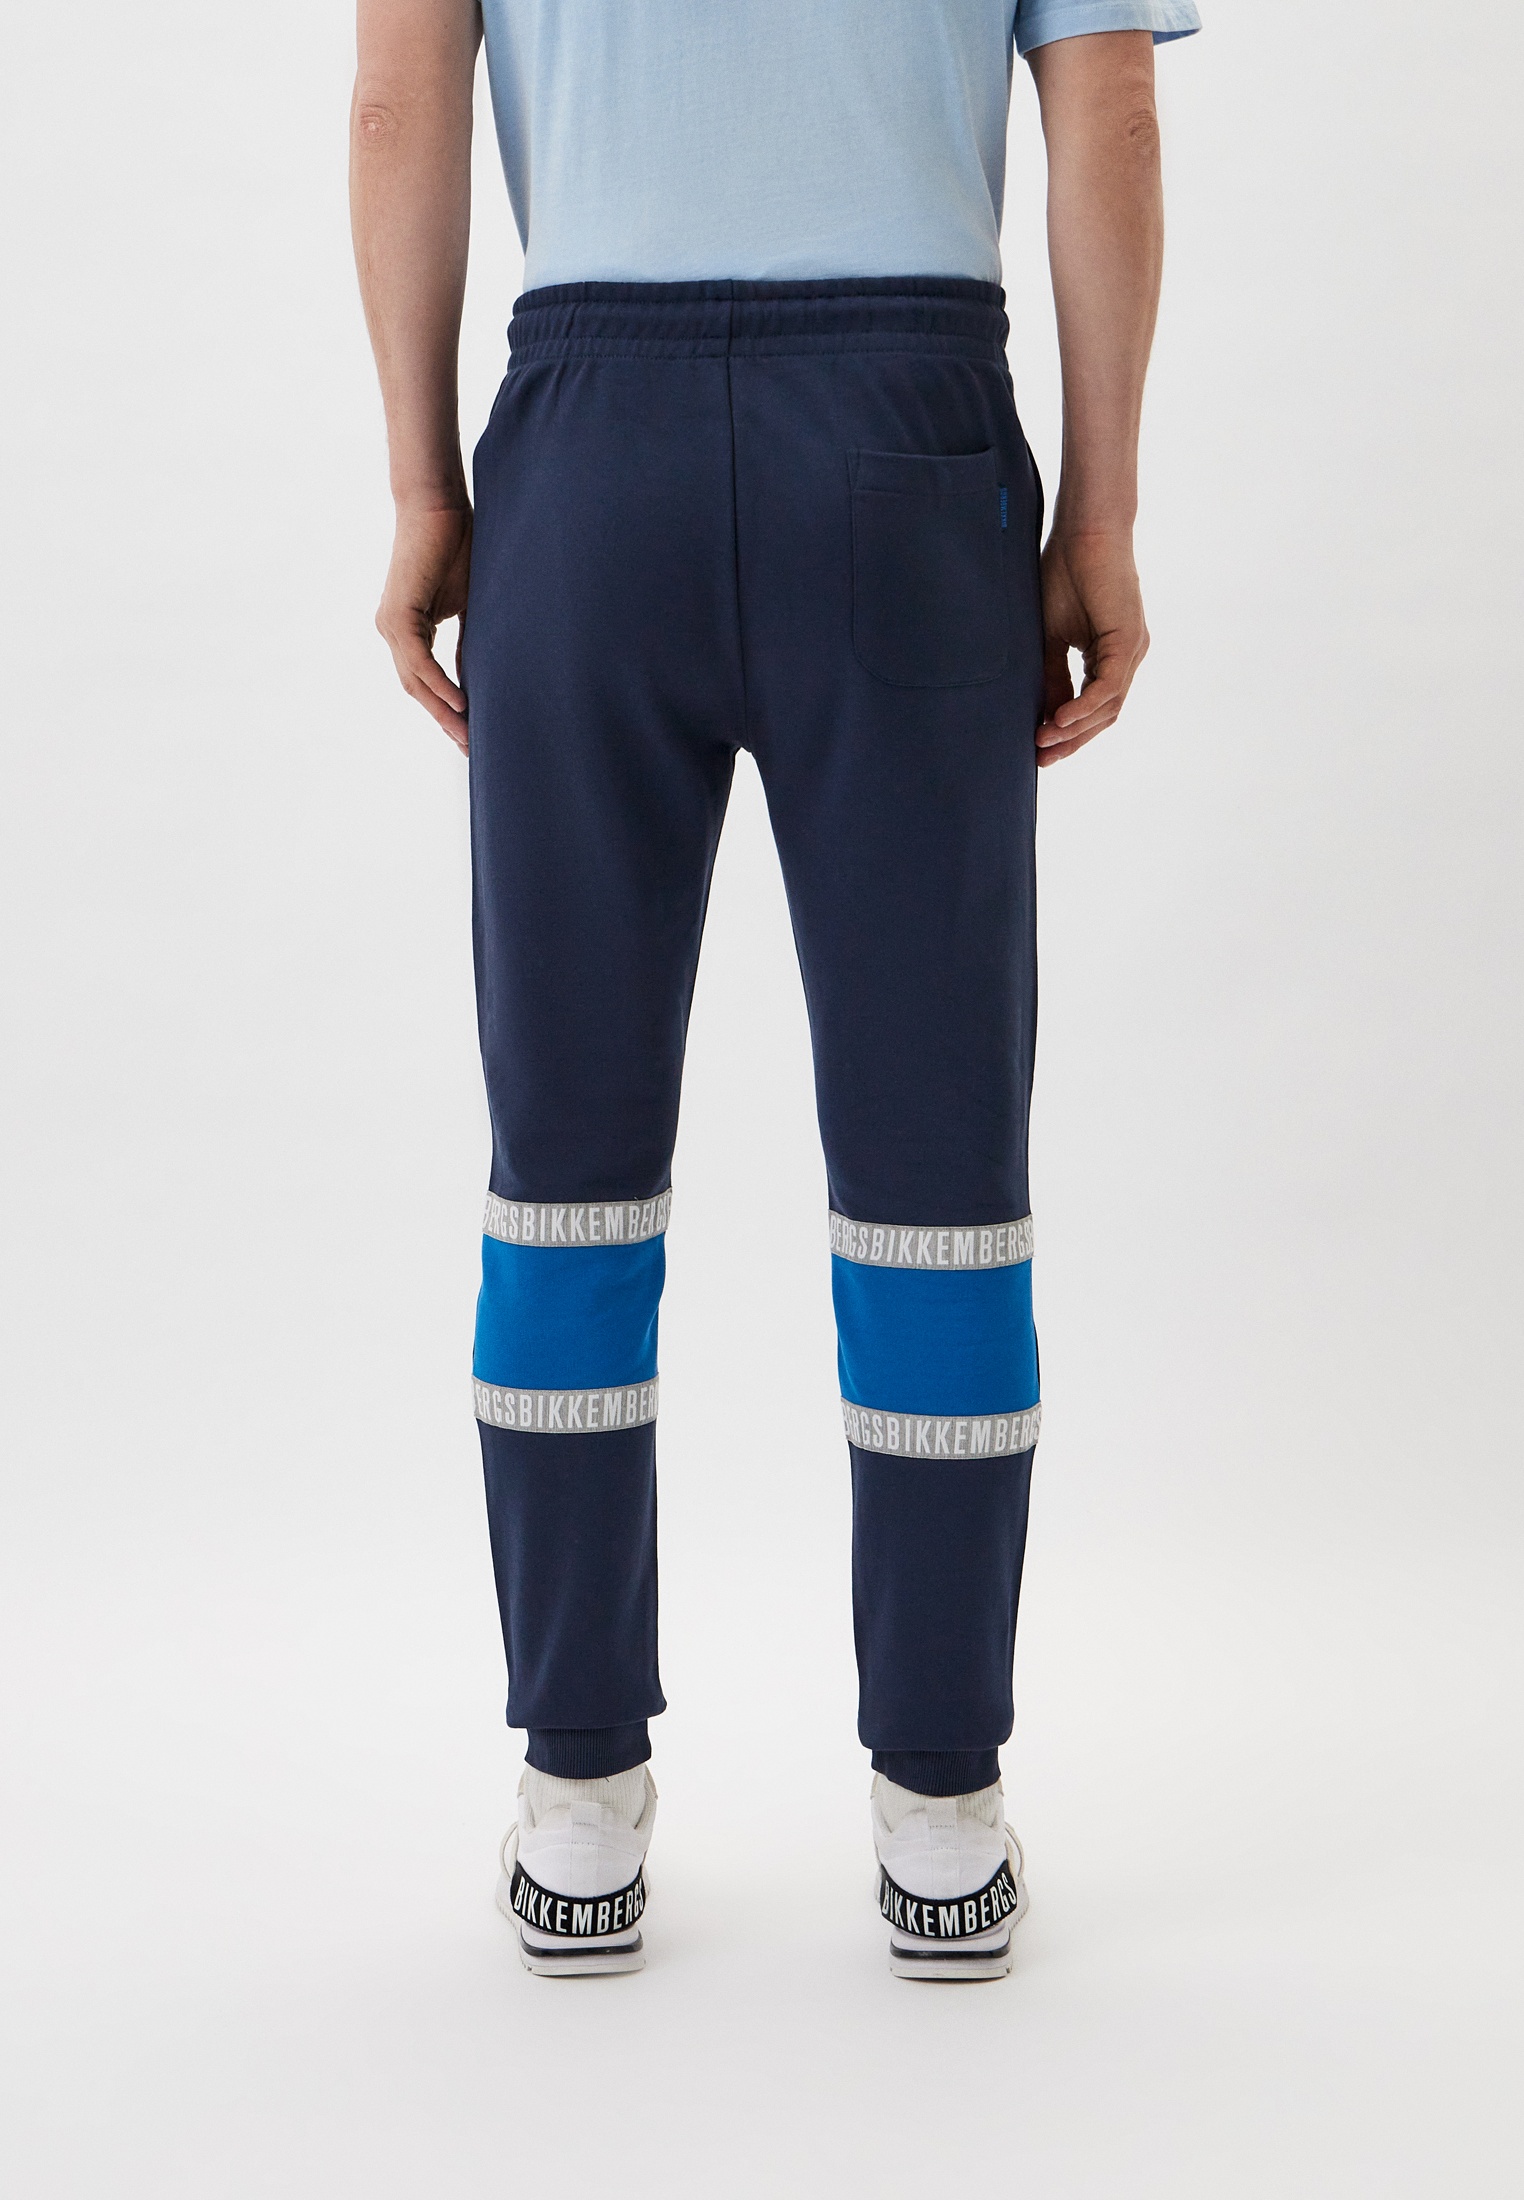 Мужские спортивные брюки Bikkembergs (Биккембергс) C124280M4351: изображение 3